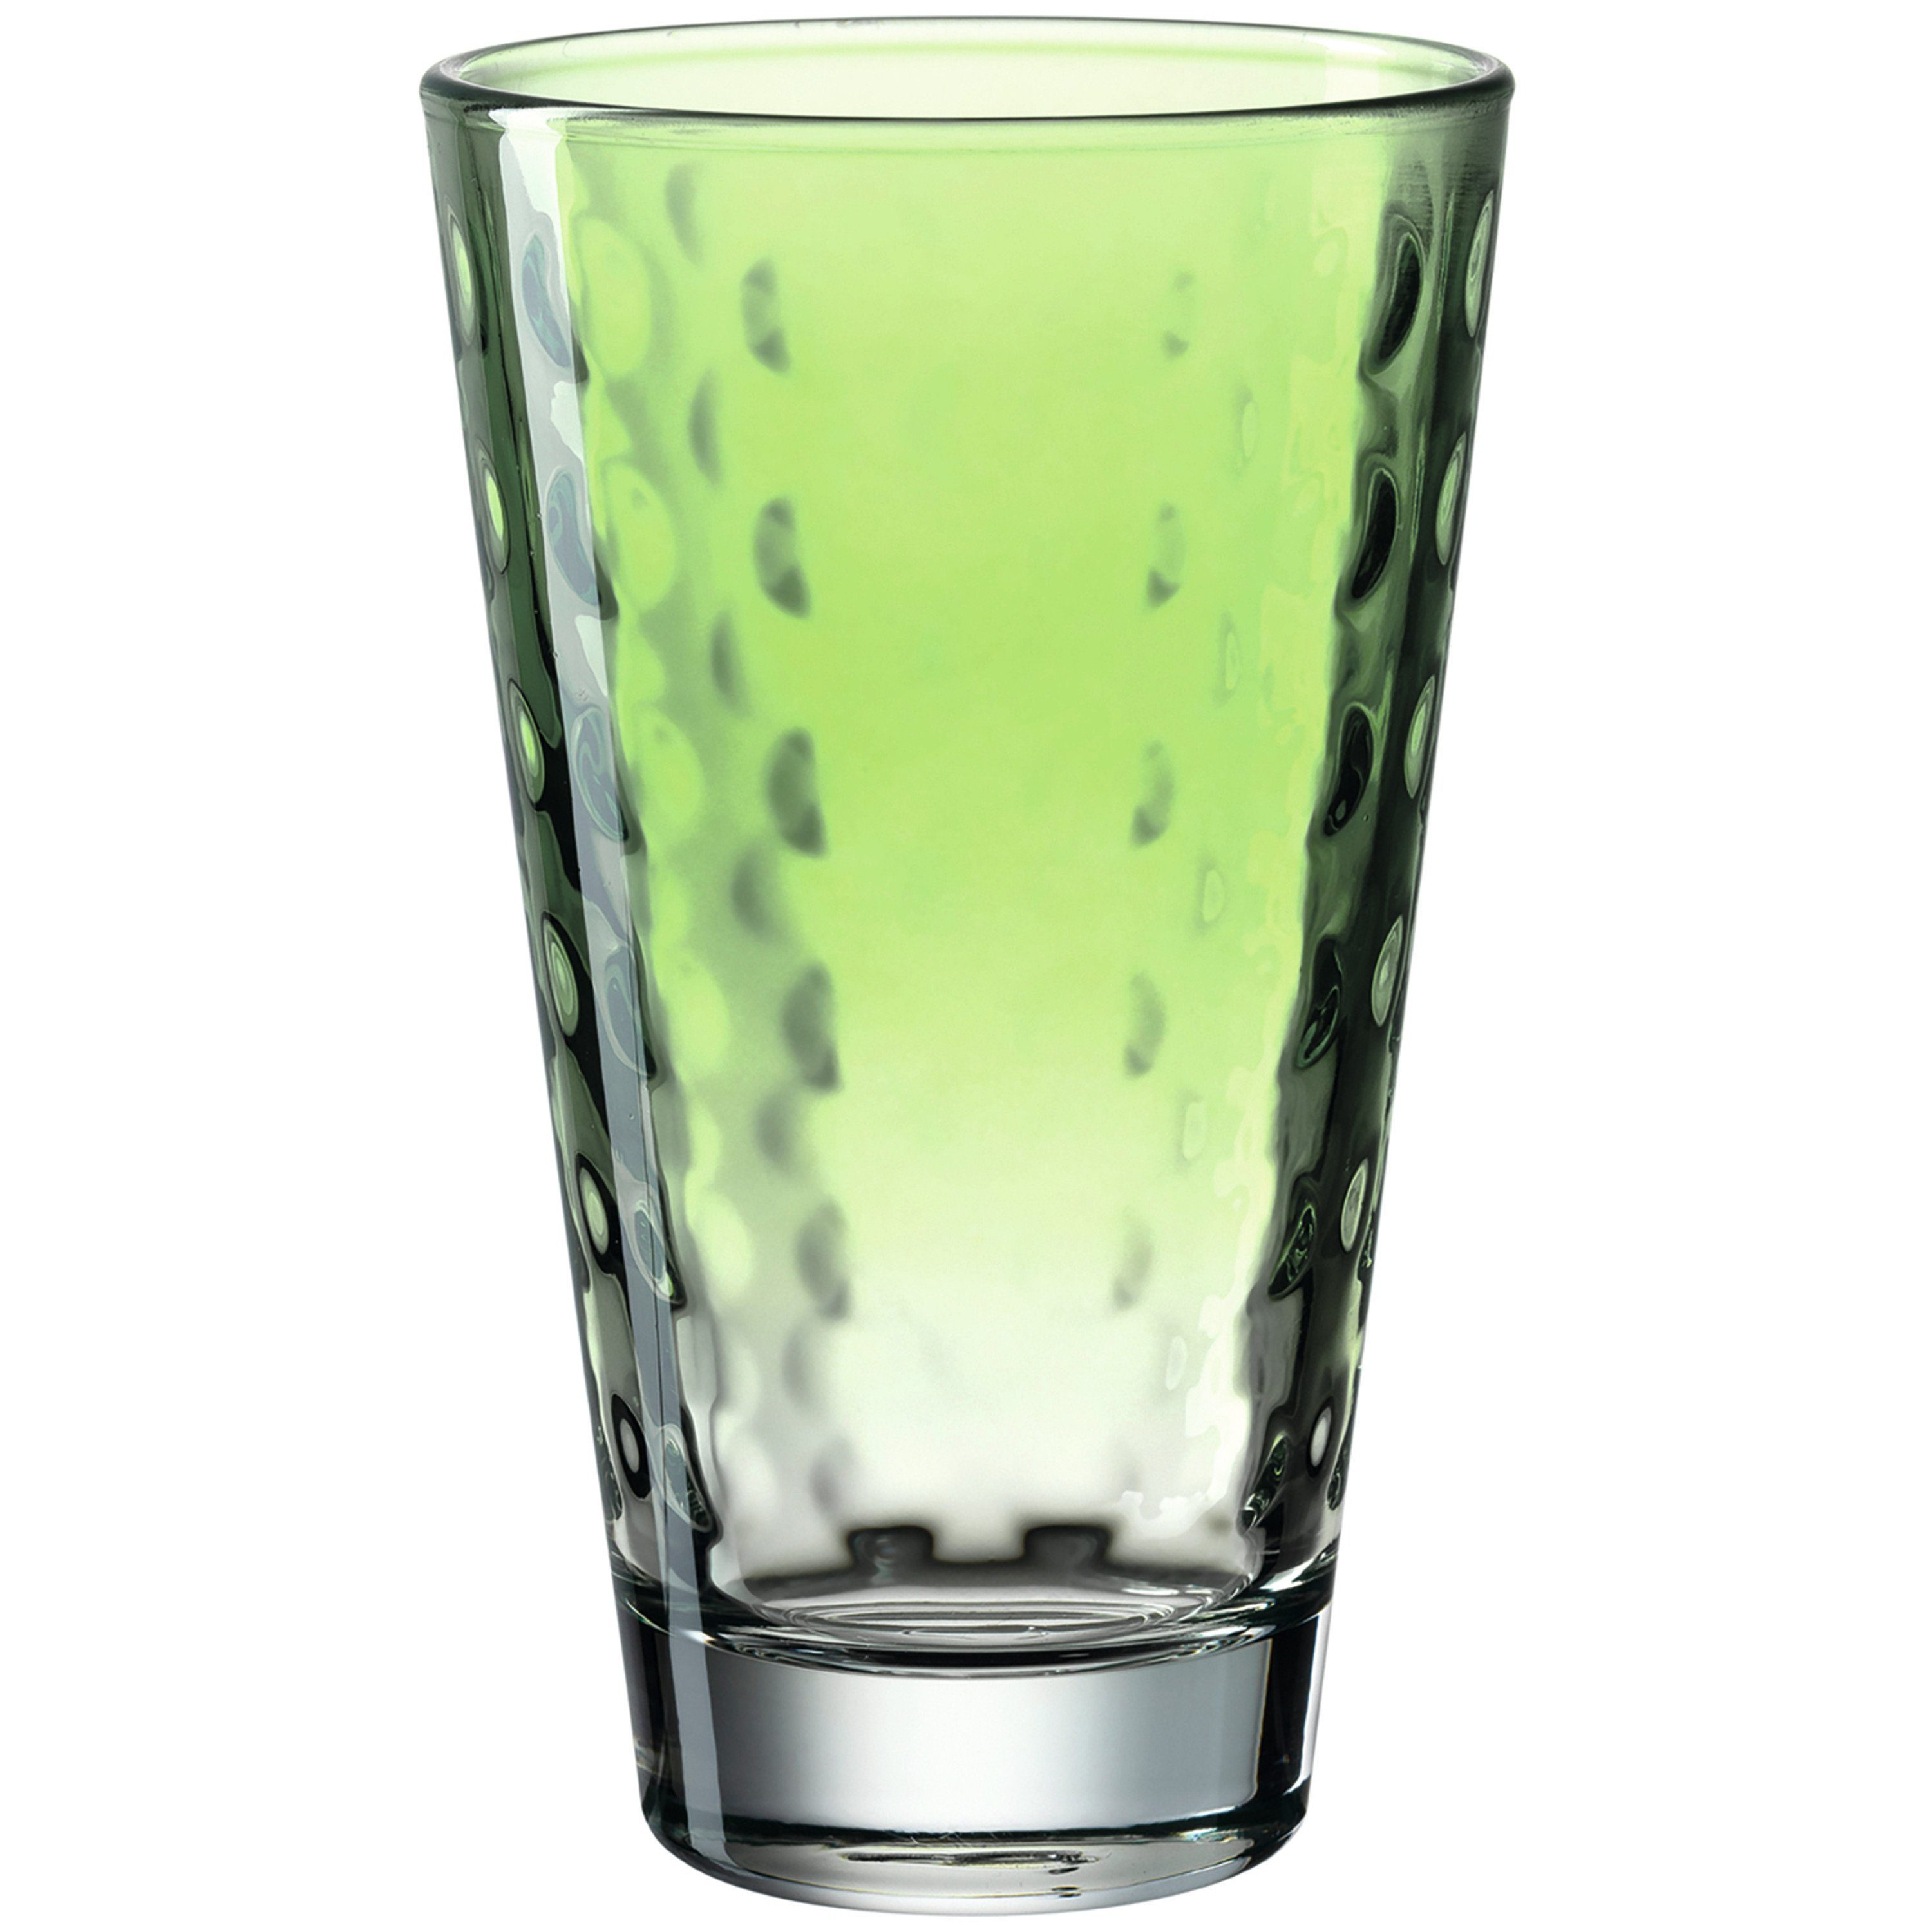 LEONARDO Glas LEONARDO Glas aus der Serie OPTIC, Füllmenge 300 ml., Buntglas, pastell grün, Glas